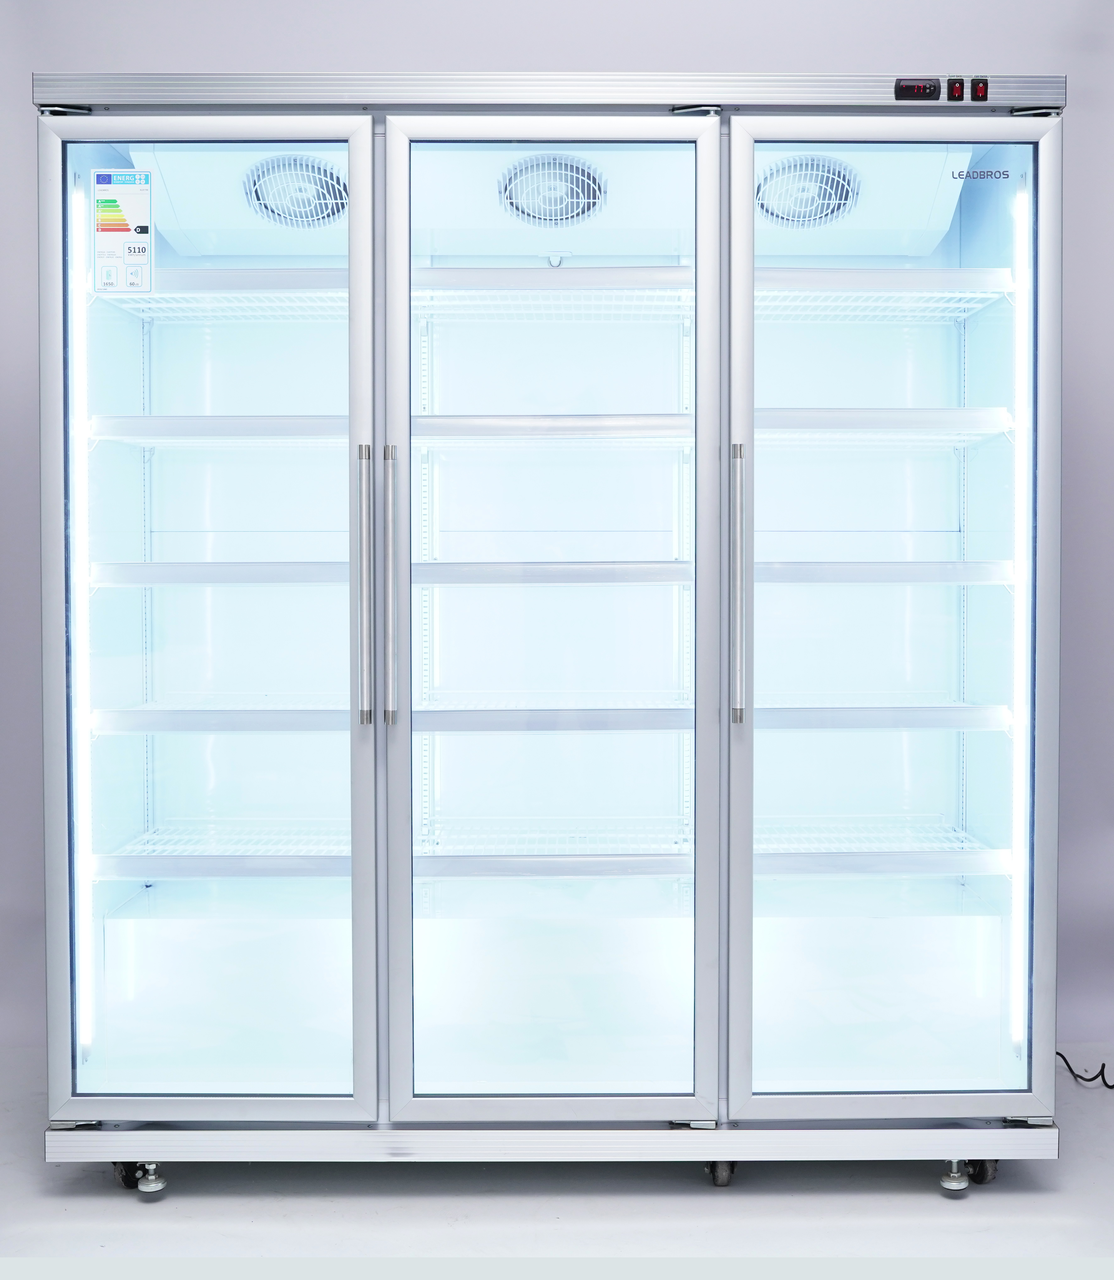 Вертикальный холодильник XLS-1700 NO FROST, фото 1